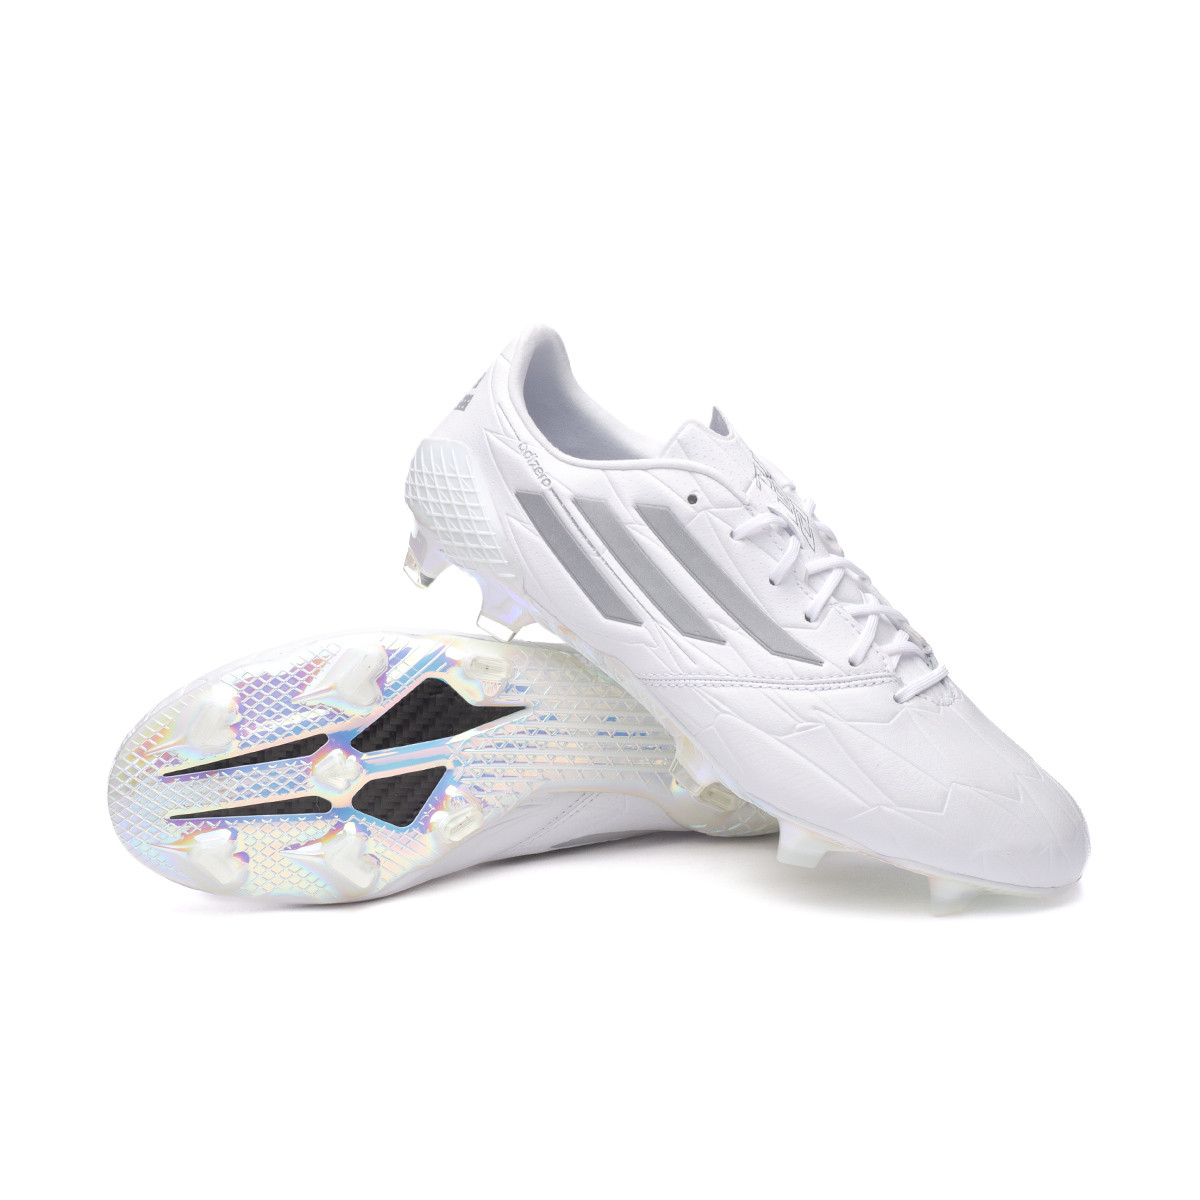 Zapatos de fútbol adidas F50 IV White-Silver Metallic - Fútbol Emotion